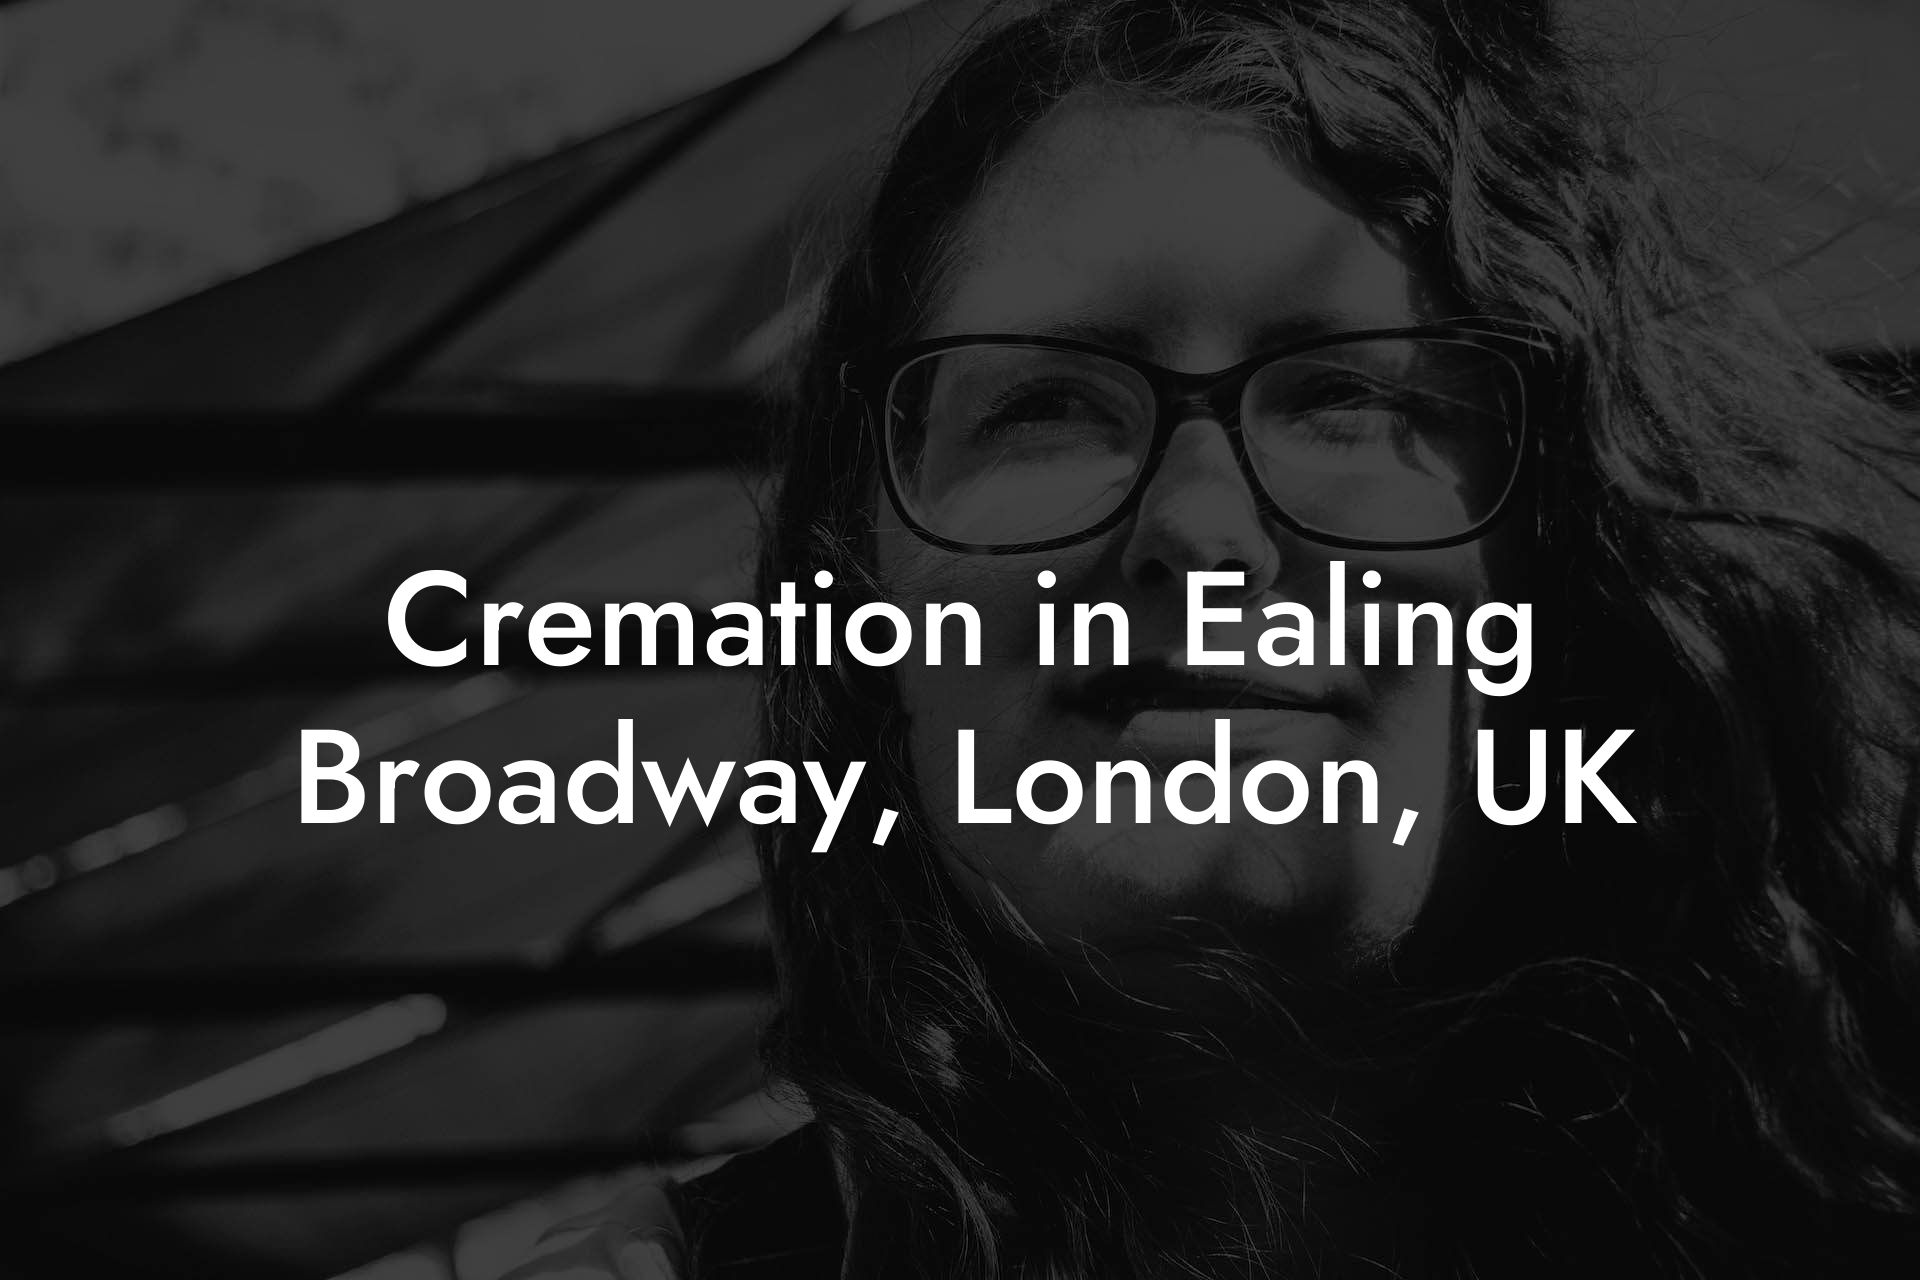 Cremation in Ealing Broadway, London, UK